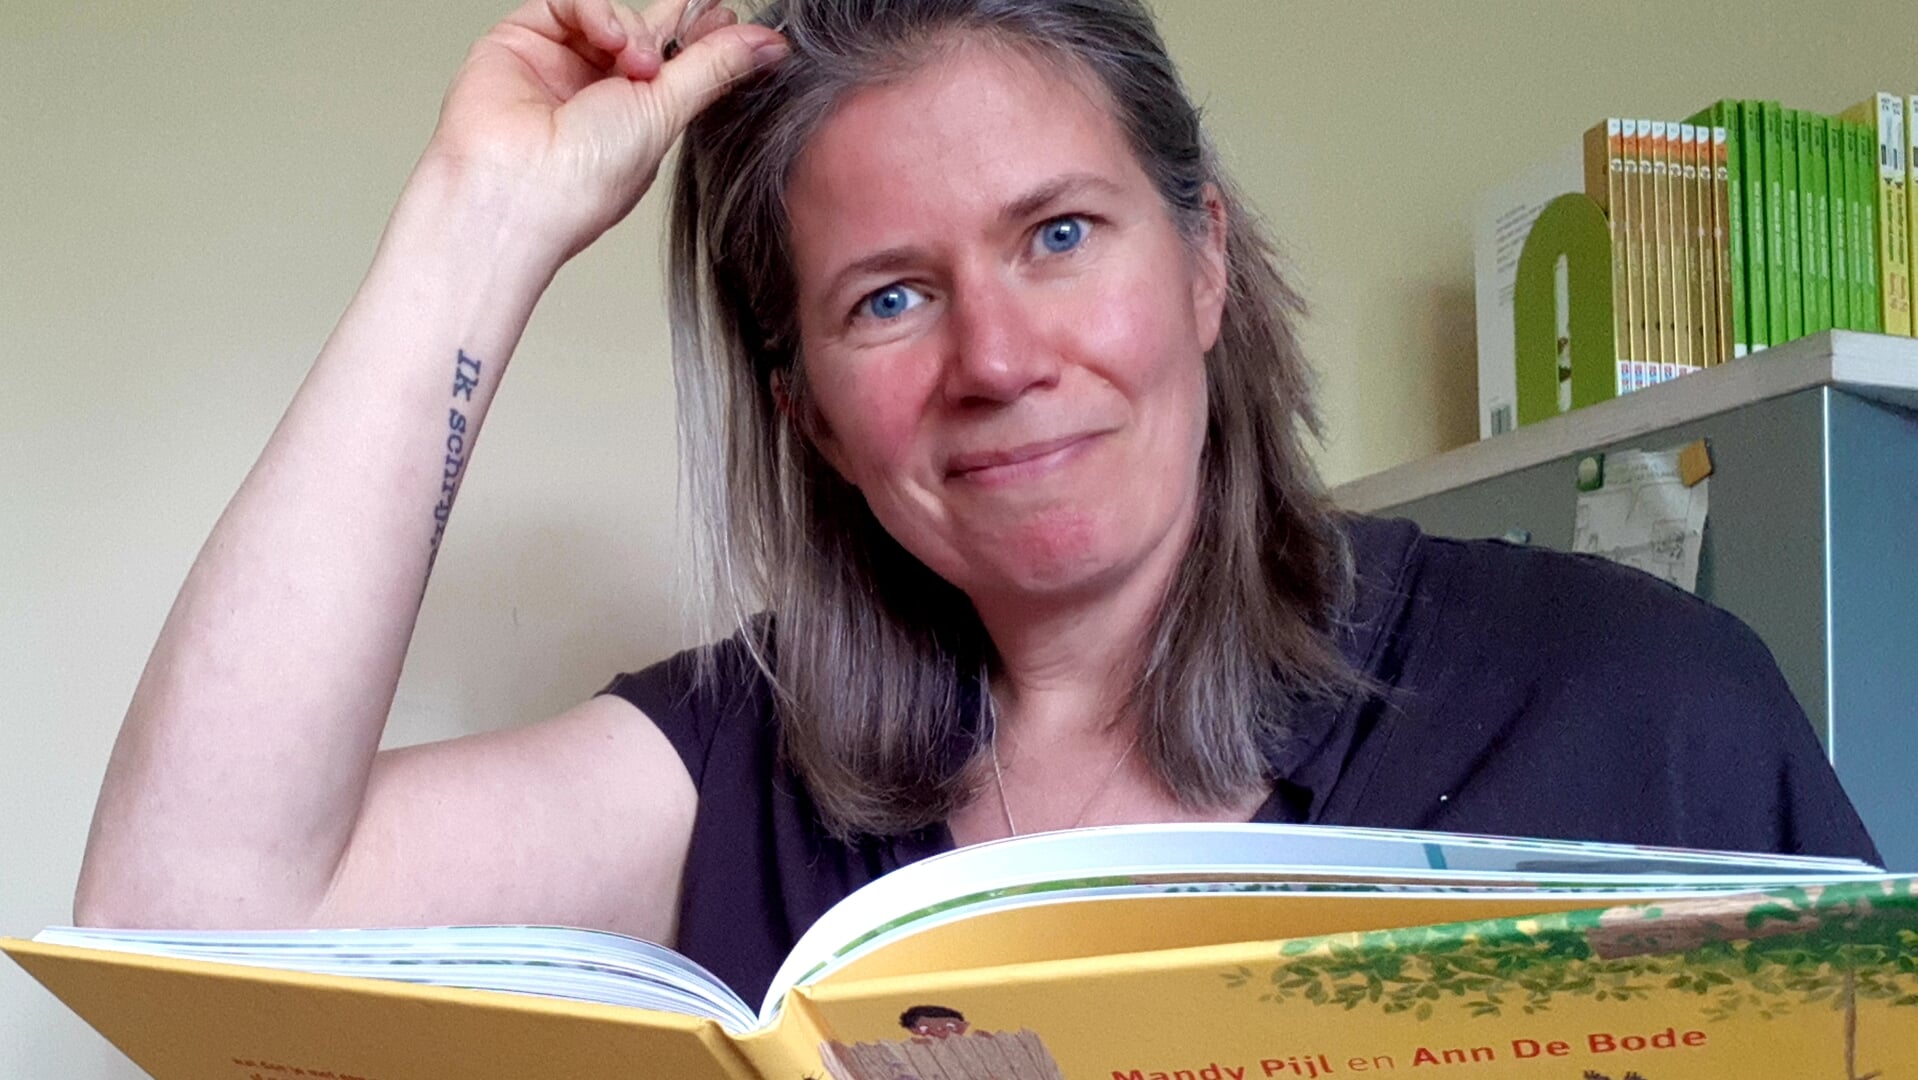 Kinderboekenschrijfster Mandy Pijl leest voor uit eigen werk.